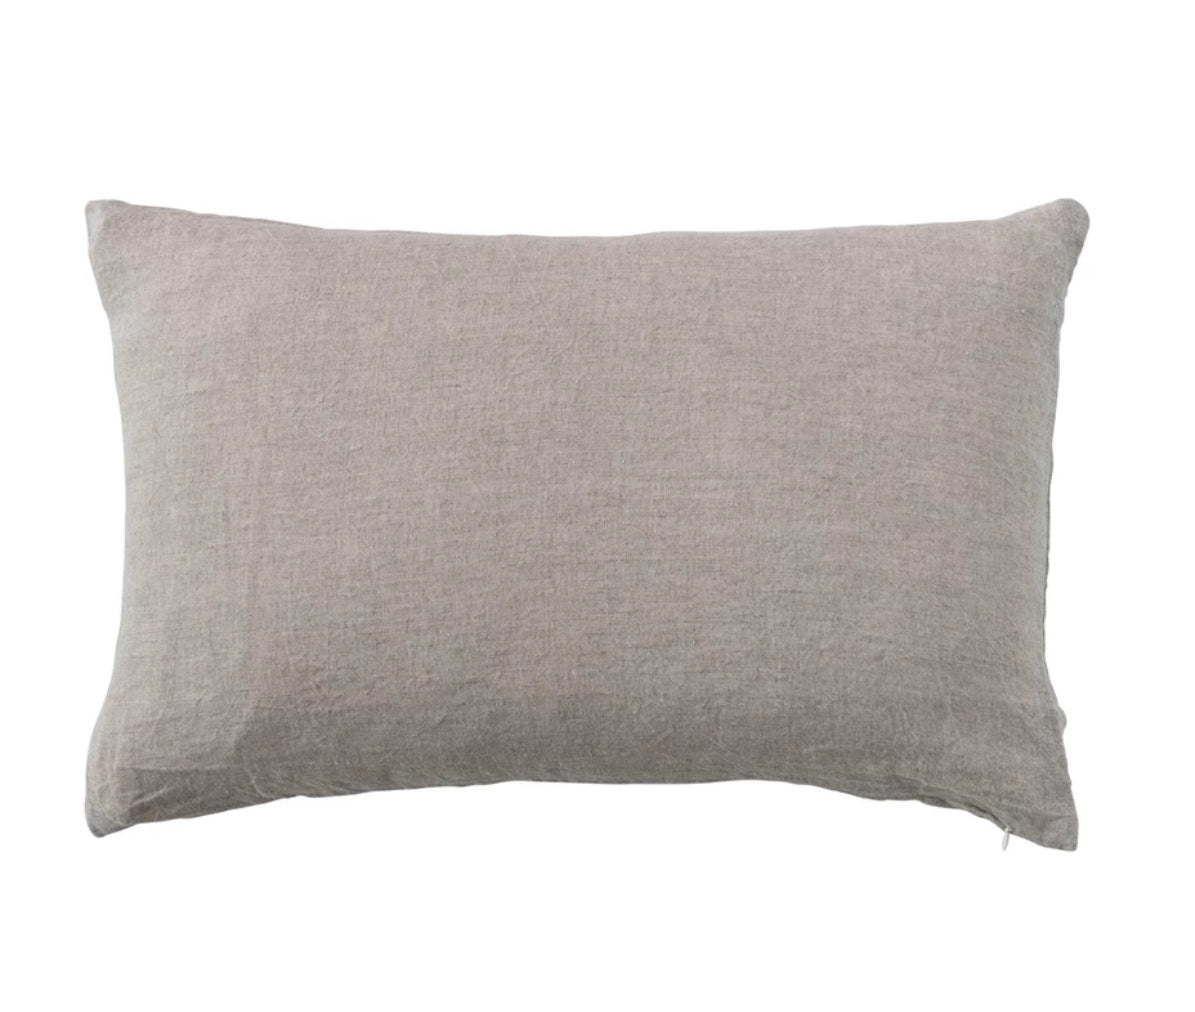 Stonewashed Linen Lumbar Pillow - Natural